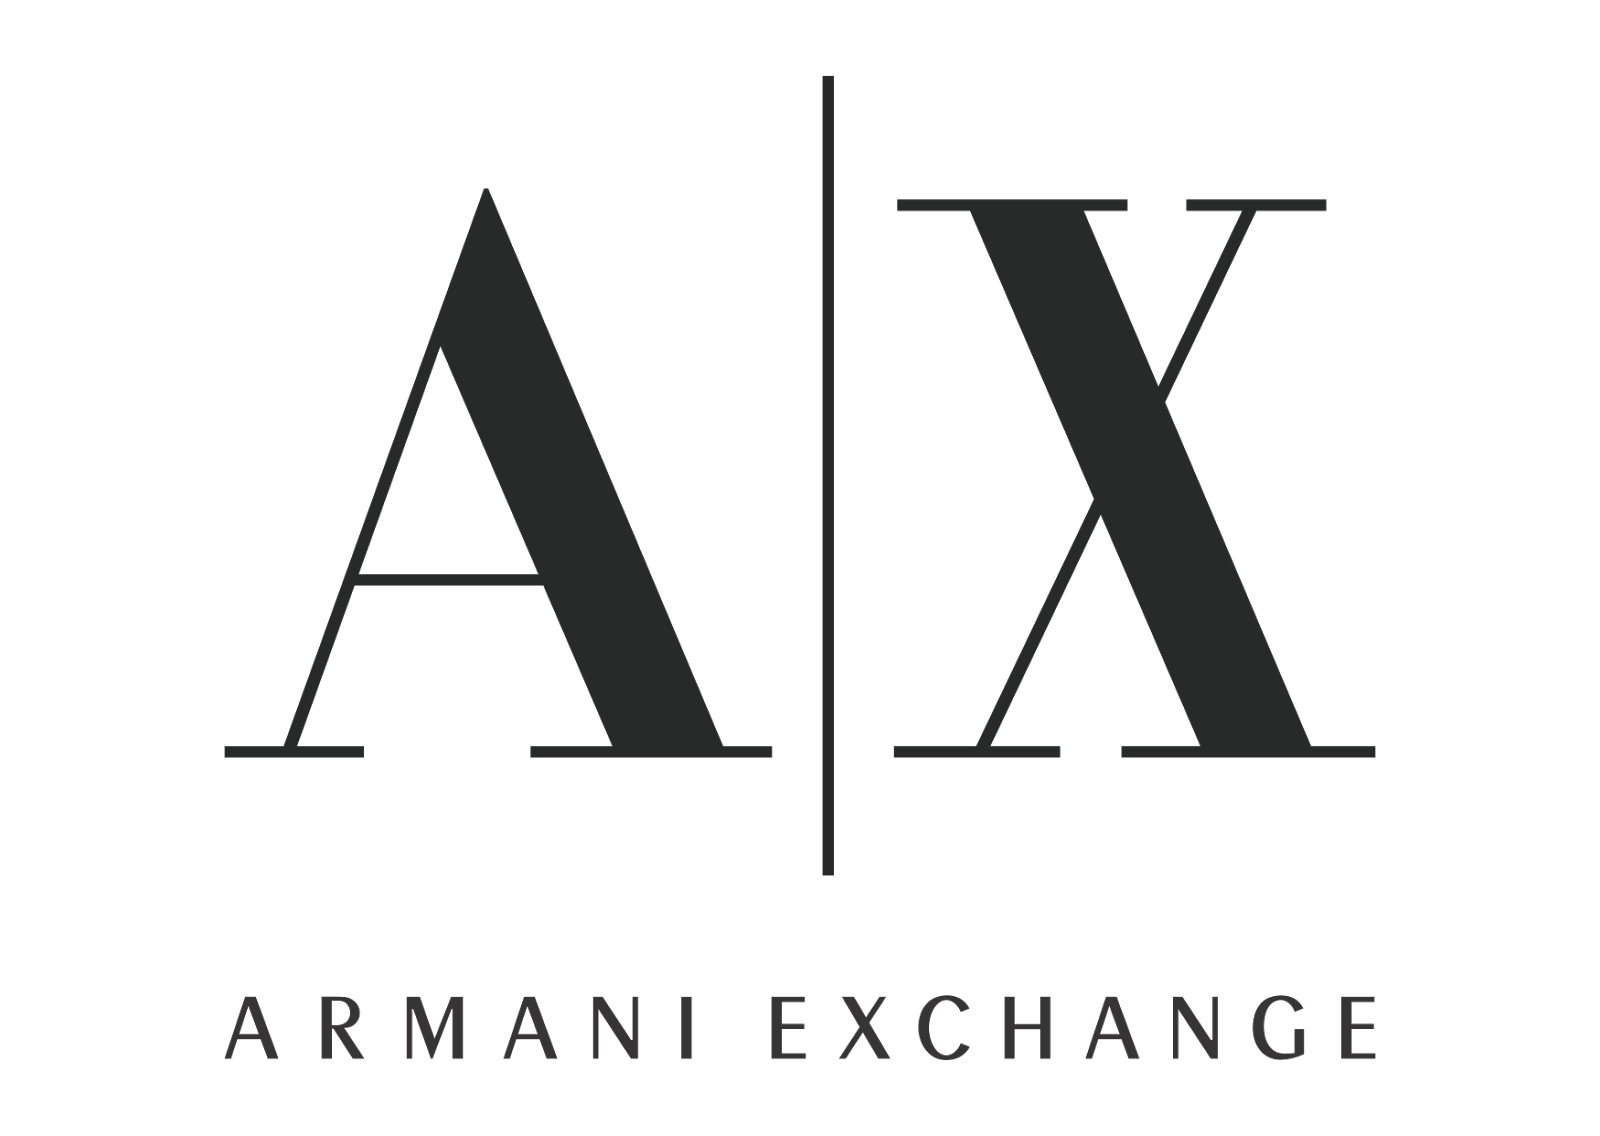 armaniexchange-logo